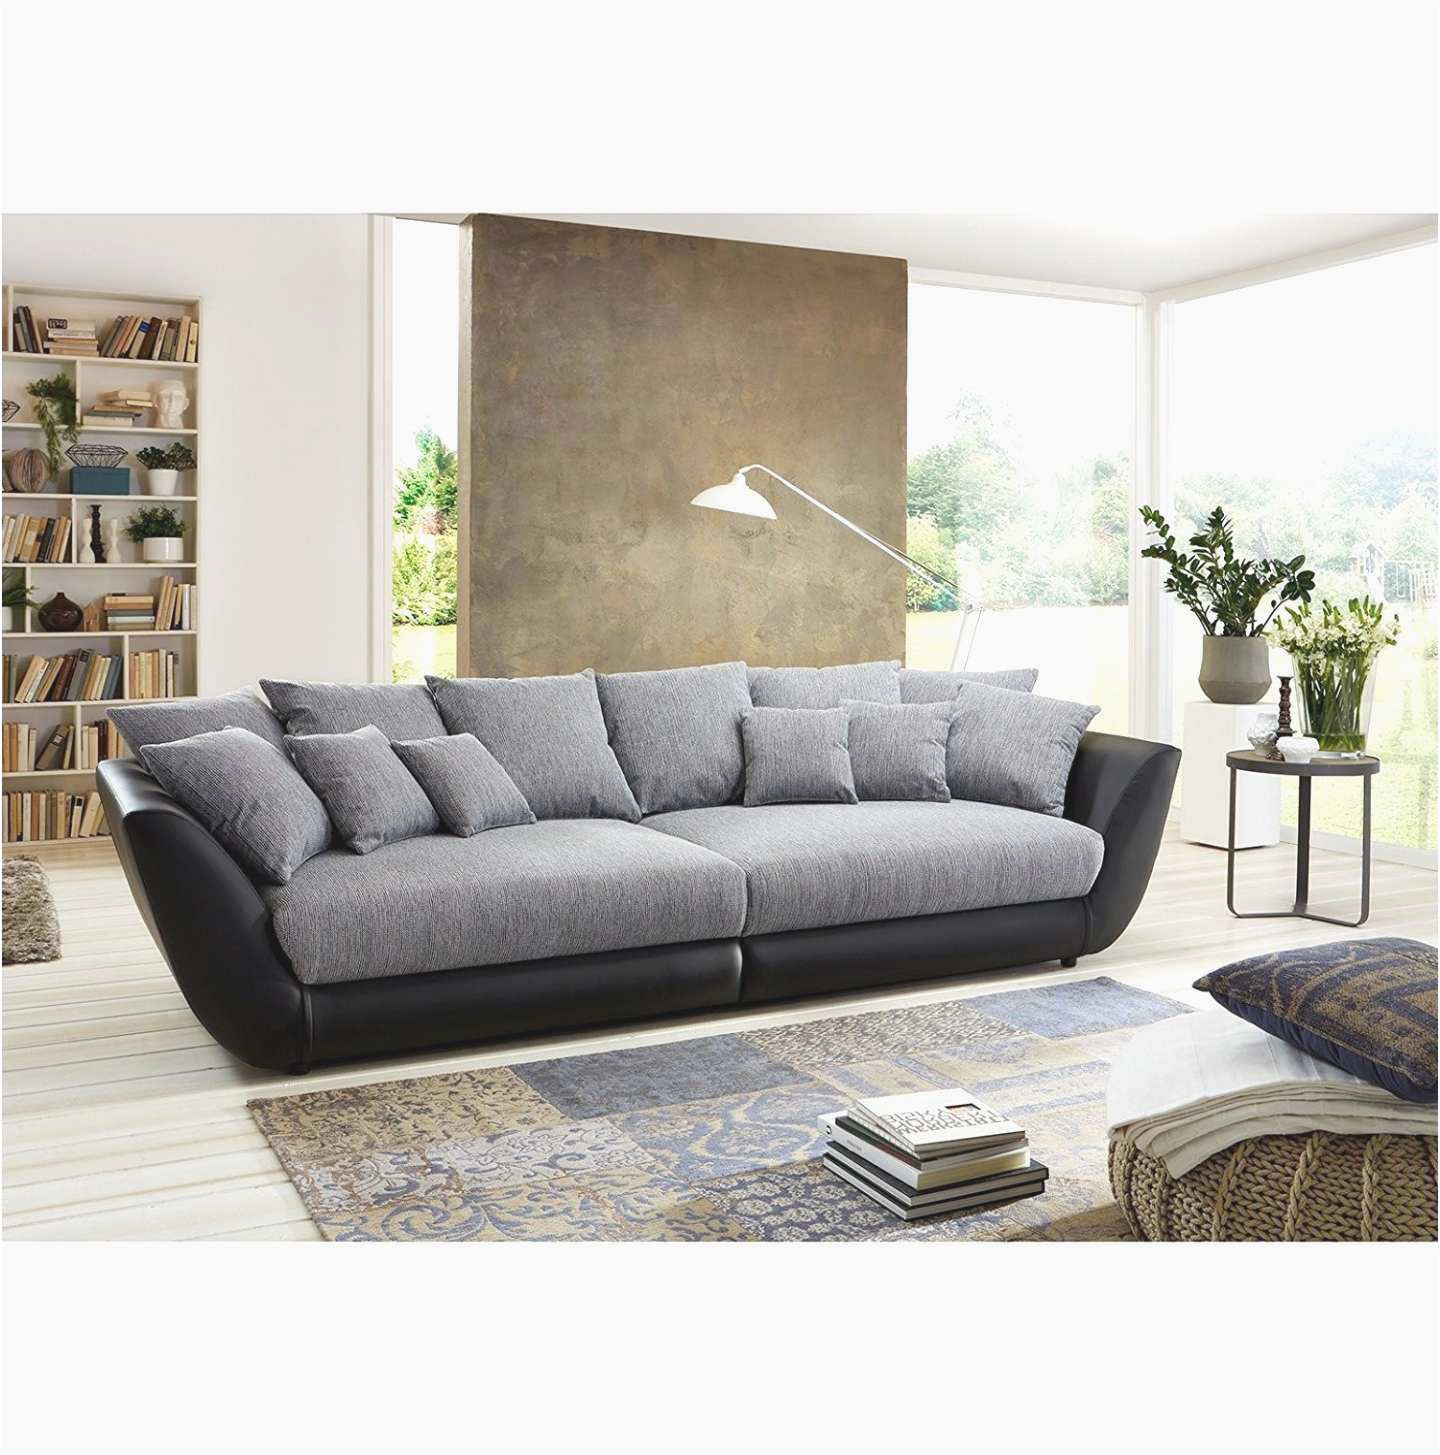 sofa l form frisch u sofa xxl schon big sofa l form luxus u couch u couch 0d s of sofa l form